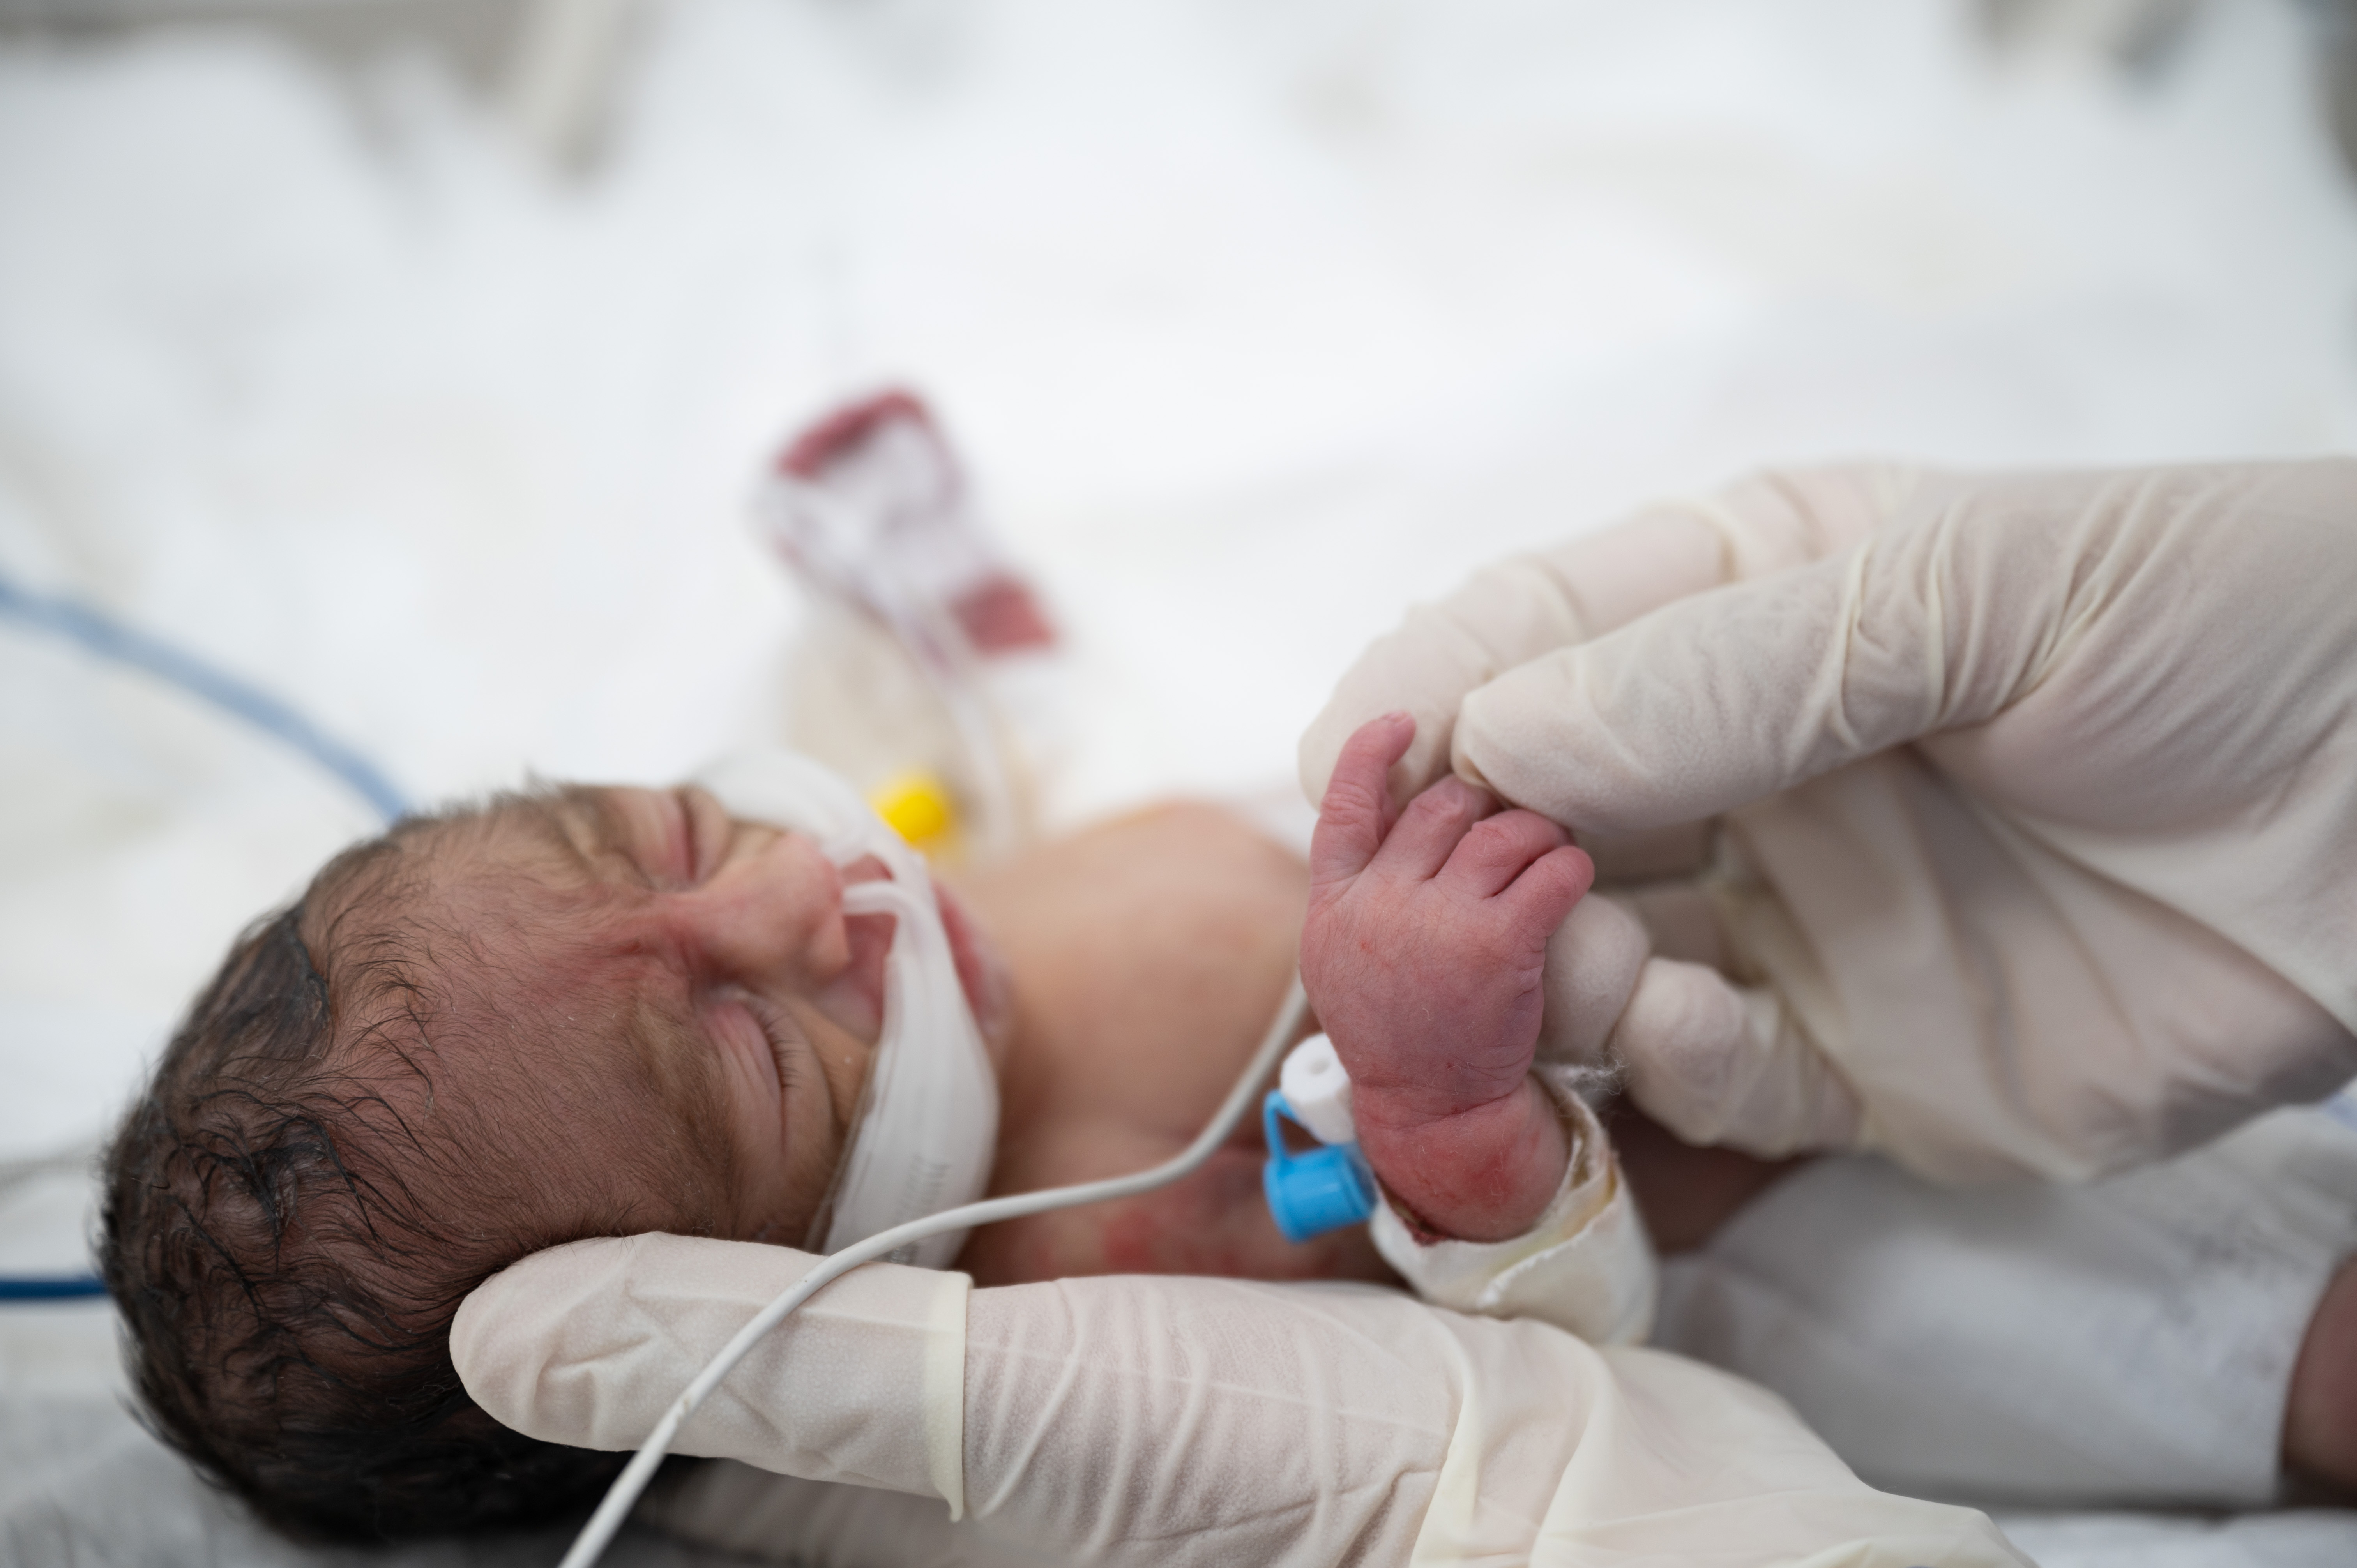 Gloved hands hold a newborn baby.